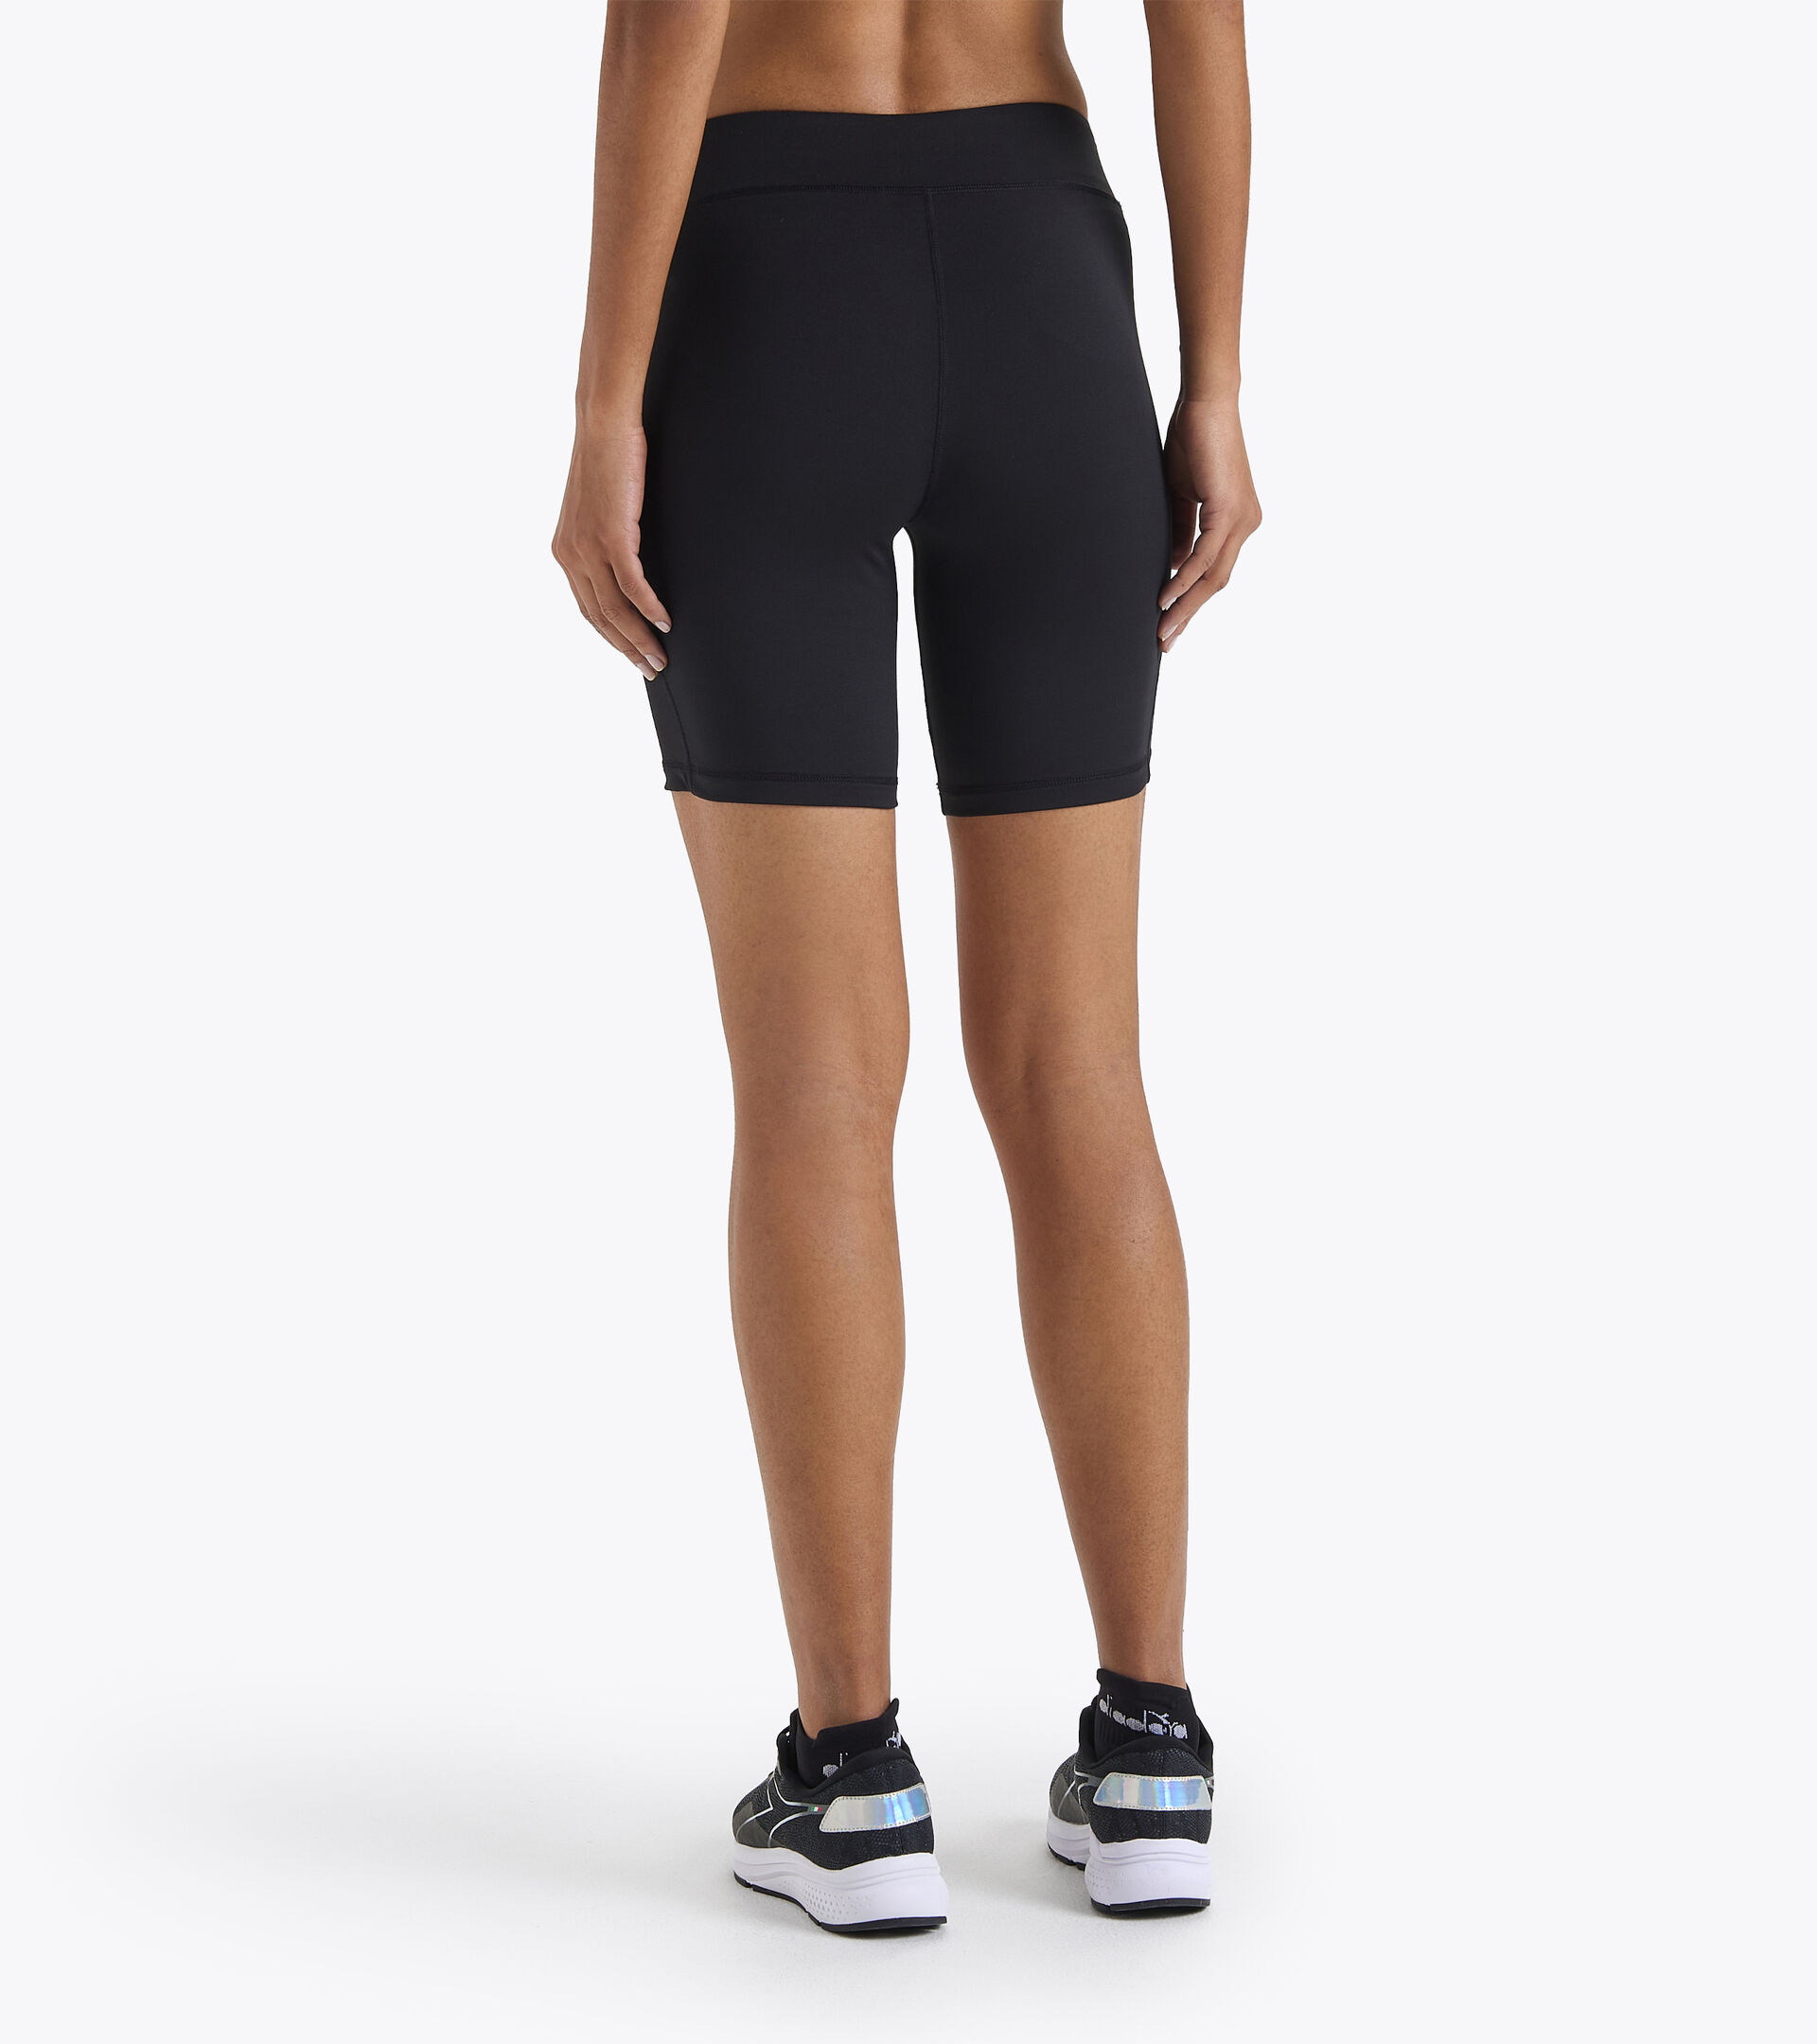 L. TIGHTS Shorts para correr - Mujer - Tienda en Diadora ES